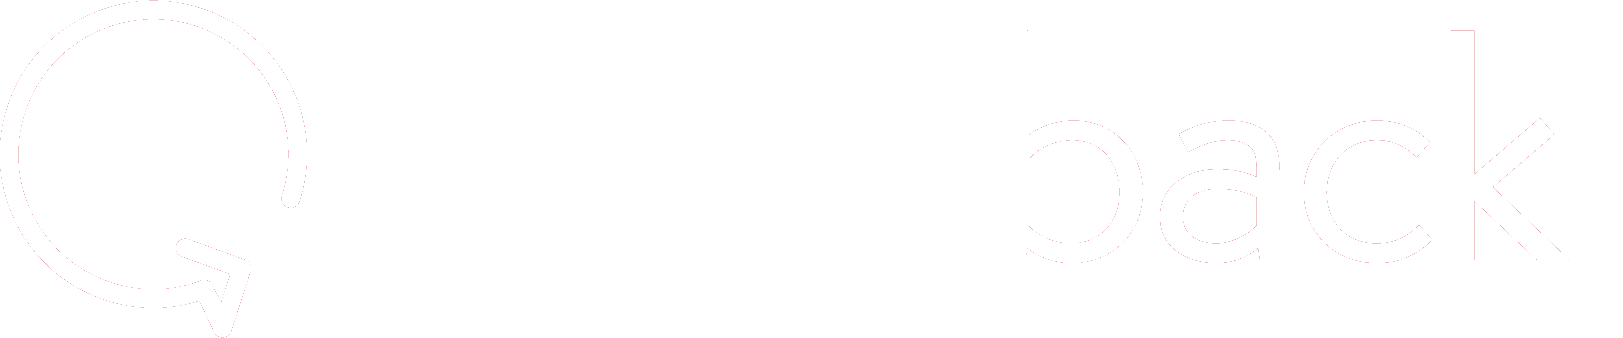 Readback logo in white.